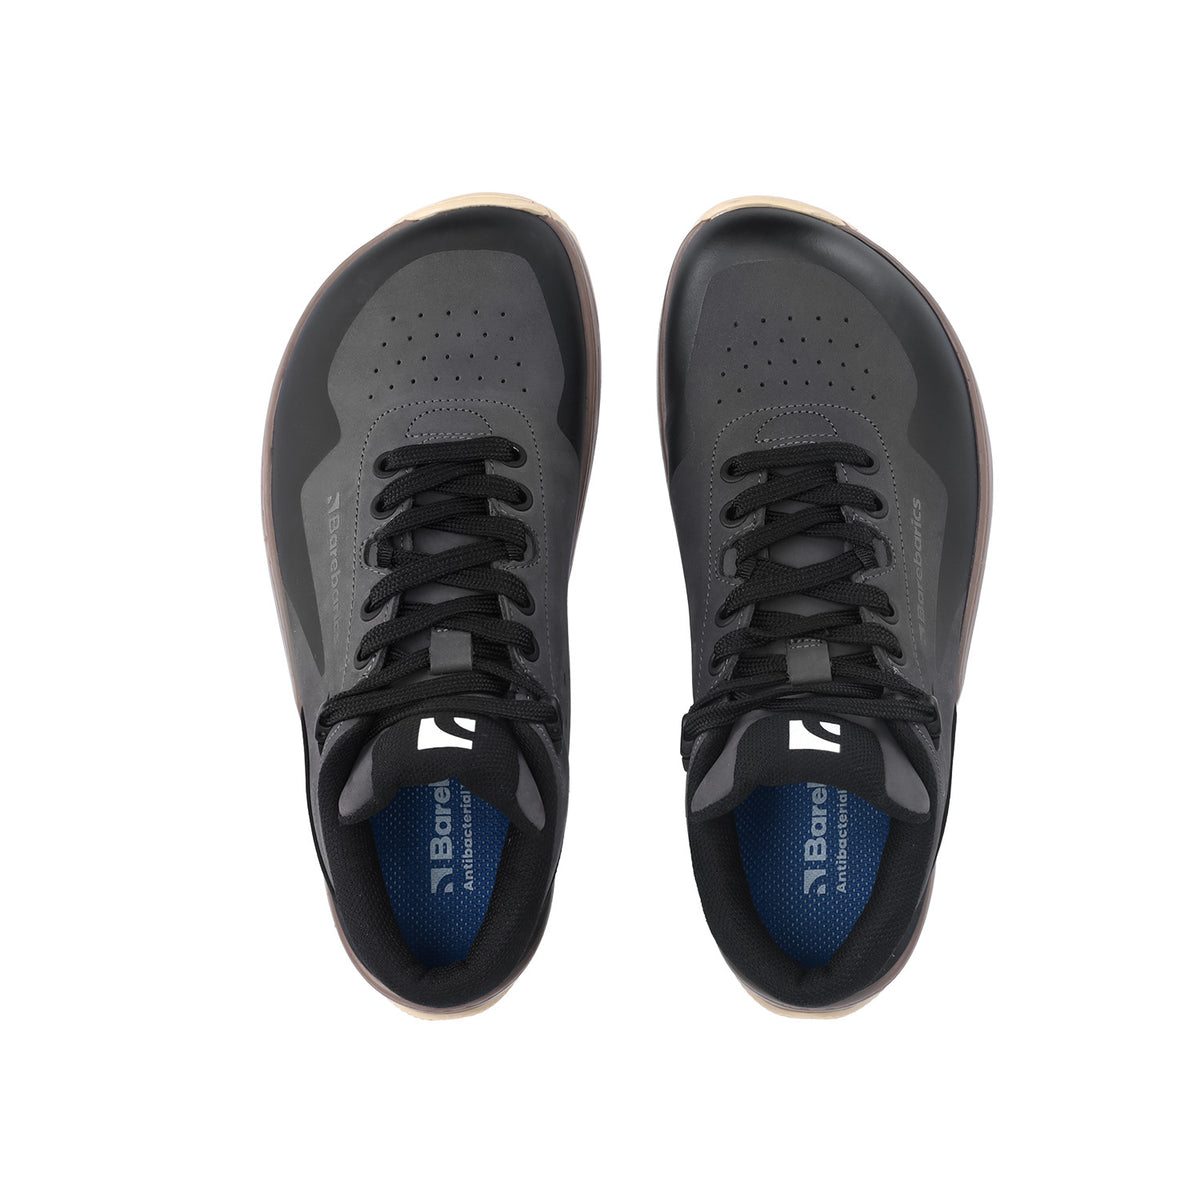 Barefoot Sneakers Barebarics Trekker - Dark Grey 4  - OzBarefoot